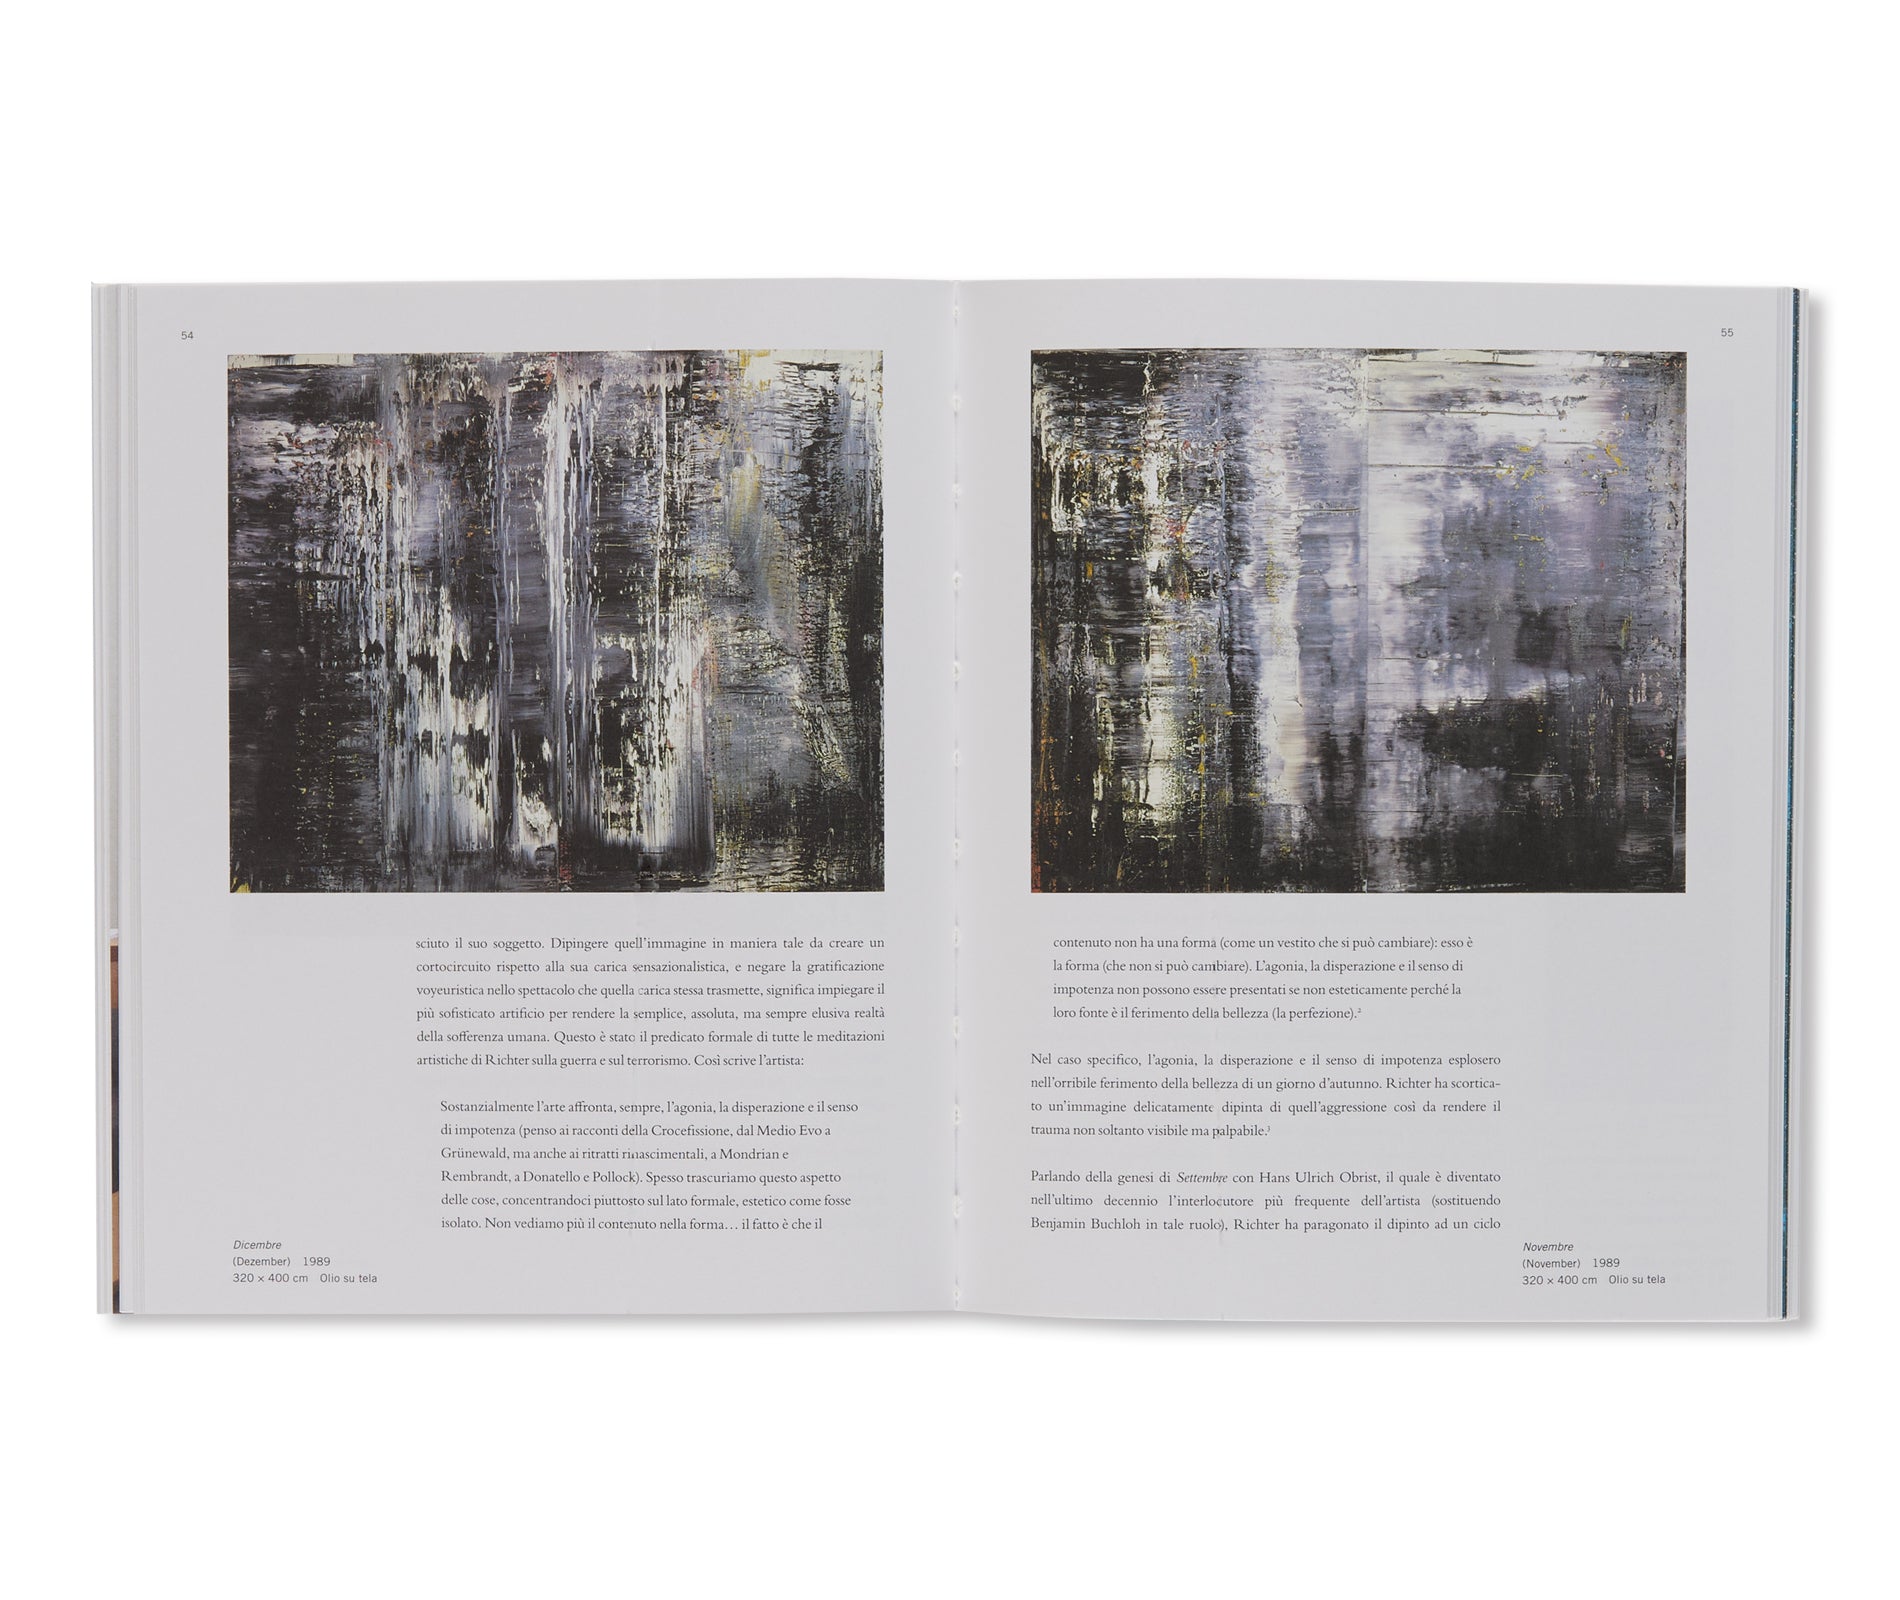 SETTEMBRE / SEPTIEMBRE: UN DIPINTO DI STORIA by Gerhard Richter [ITALIAN EDITION]